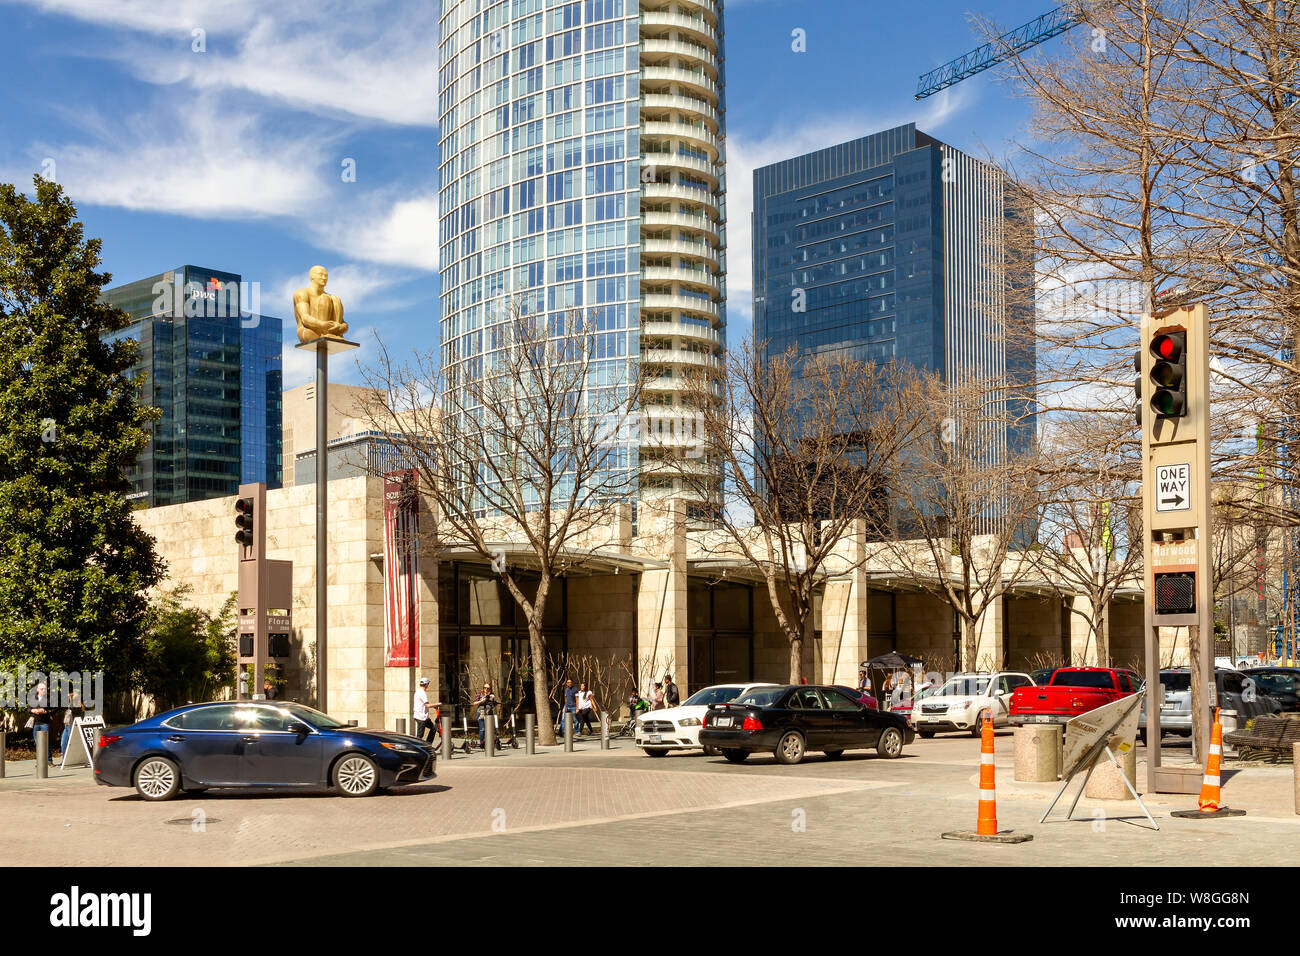 Dallas Arts District, 16. März 2019: Die Arts District ist eine darstellende und bildende Künste Bezirk in der Innenstadt von Dallas und 13 Einrichtungen includin Stockfoto